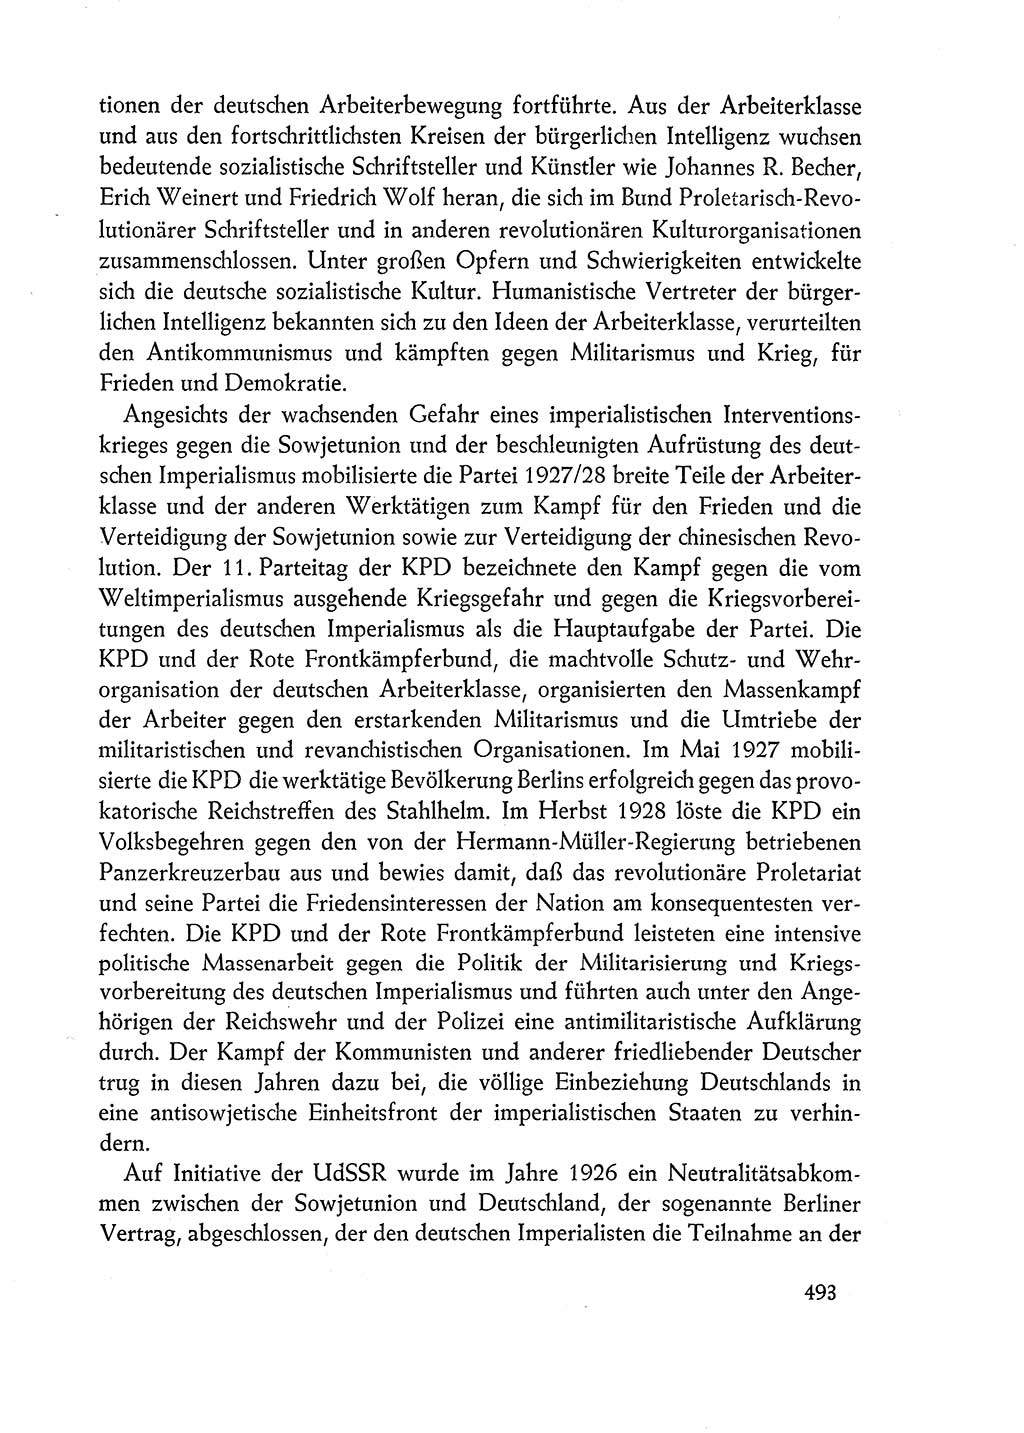 Dokumente der Sozialistischen Einheitspartei Deutschlands (SED) [Deutsche Demokratische Republik (DDR)] 1962-1963, Seite 493 (Dok. SED DDR 1962-1963, S. 493)